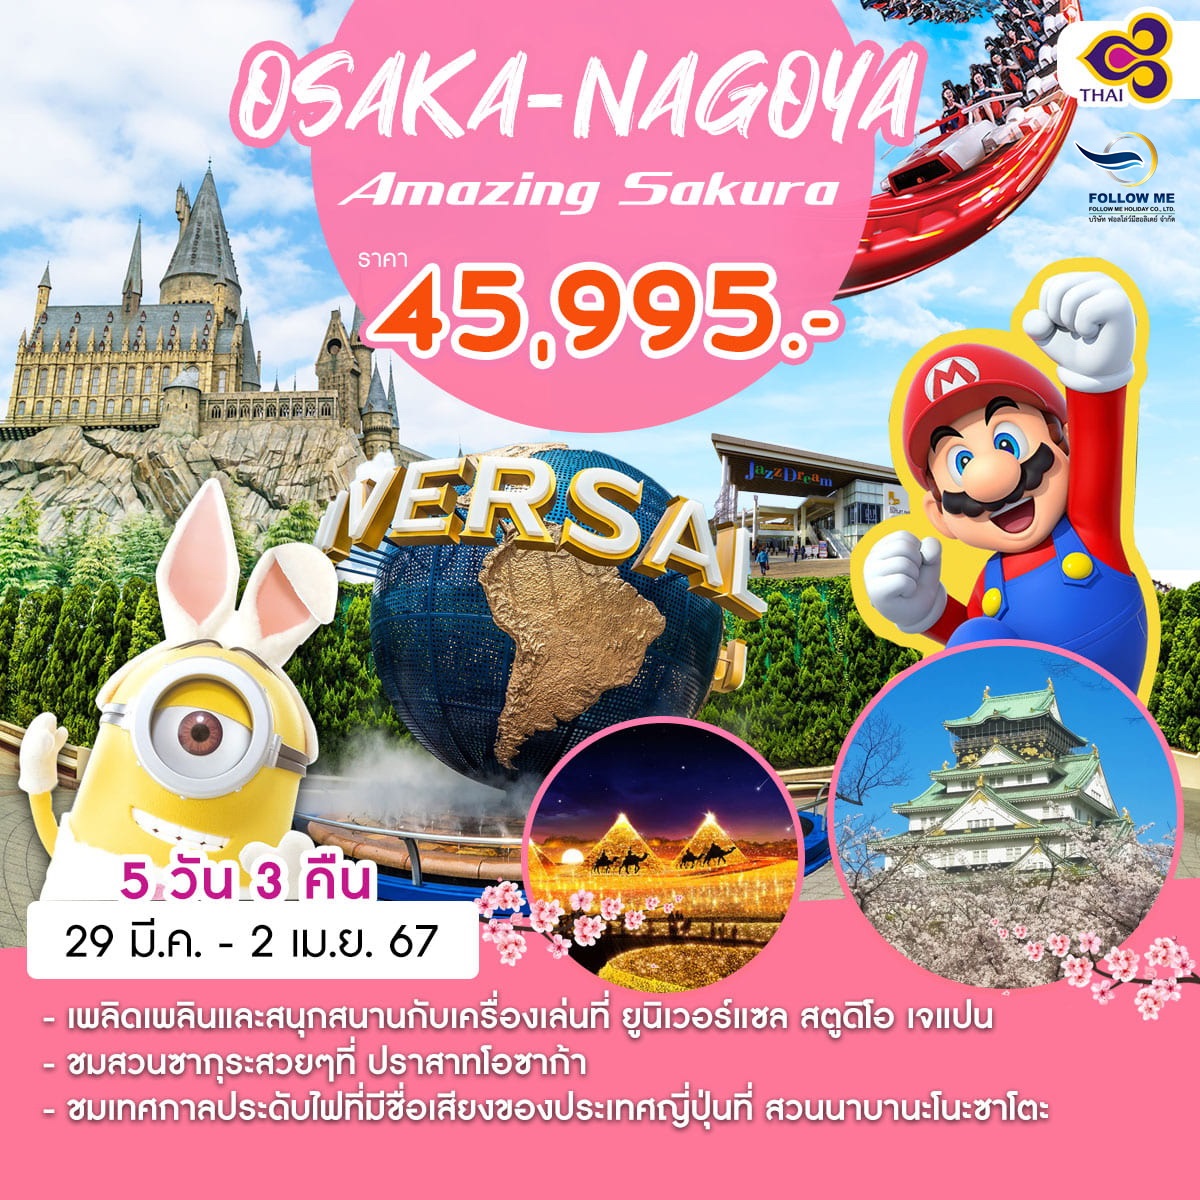 ทัวร์ญี่ปุ่น Amazing ซากุระ OSAKA-NAGOYA AMAZING SAKURA 5D3N BY TG